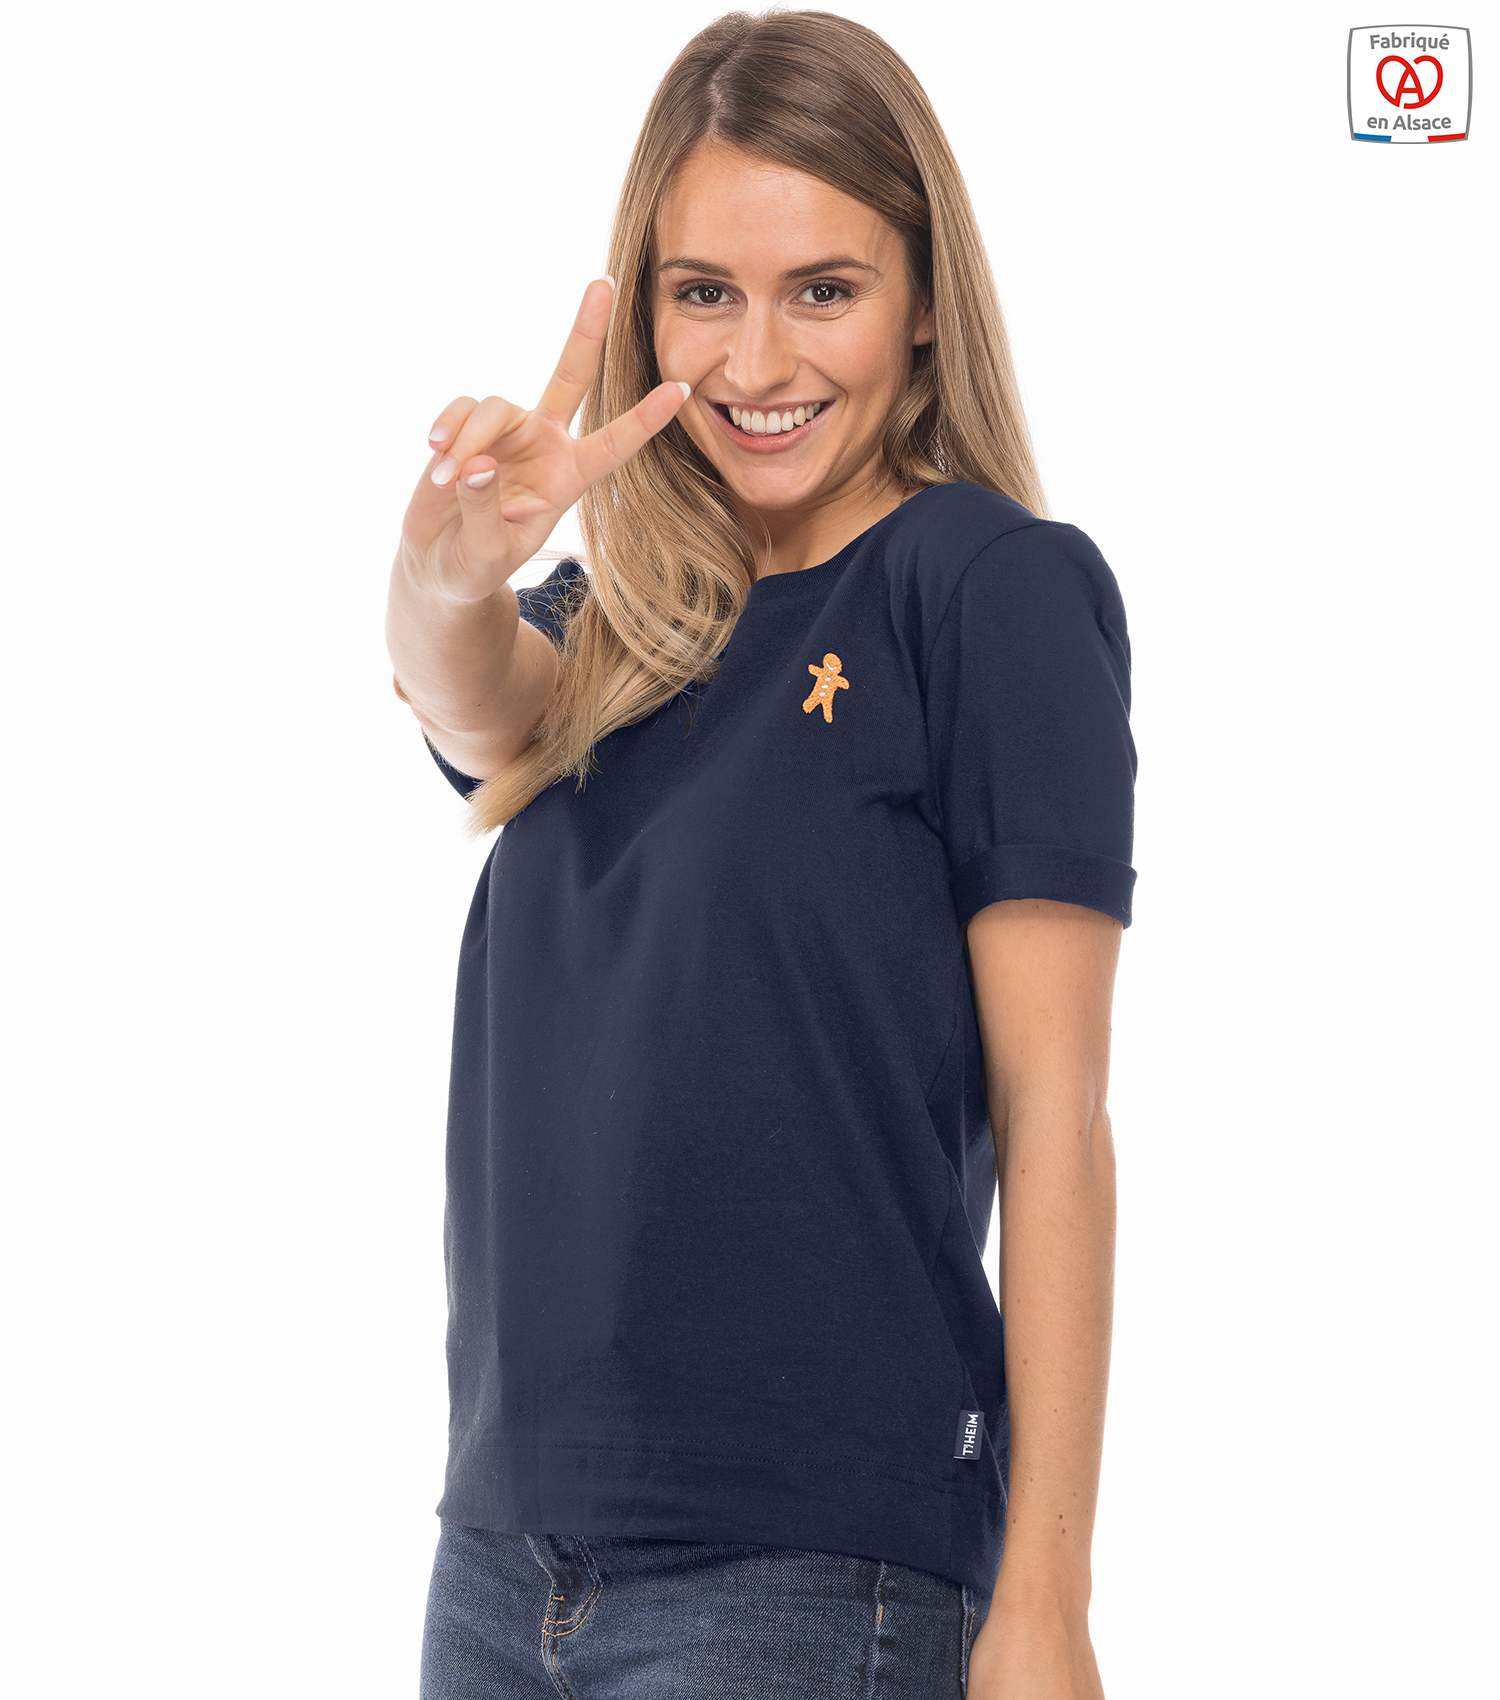 theim-t-shirt-made-in-france-mixte-bleu-marine-mannele-femme-1500-x-1700-px